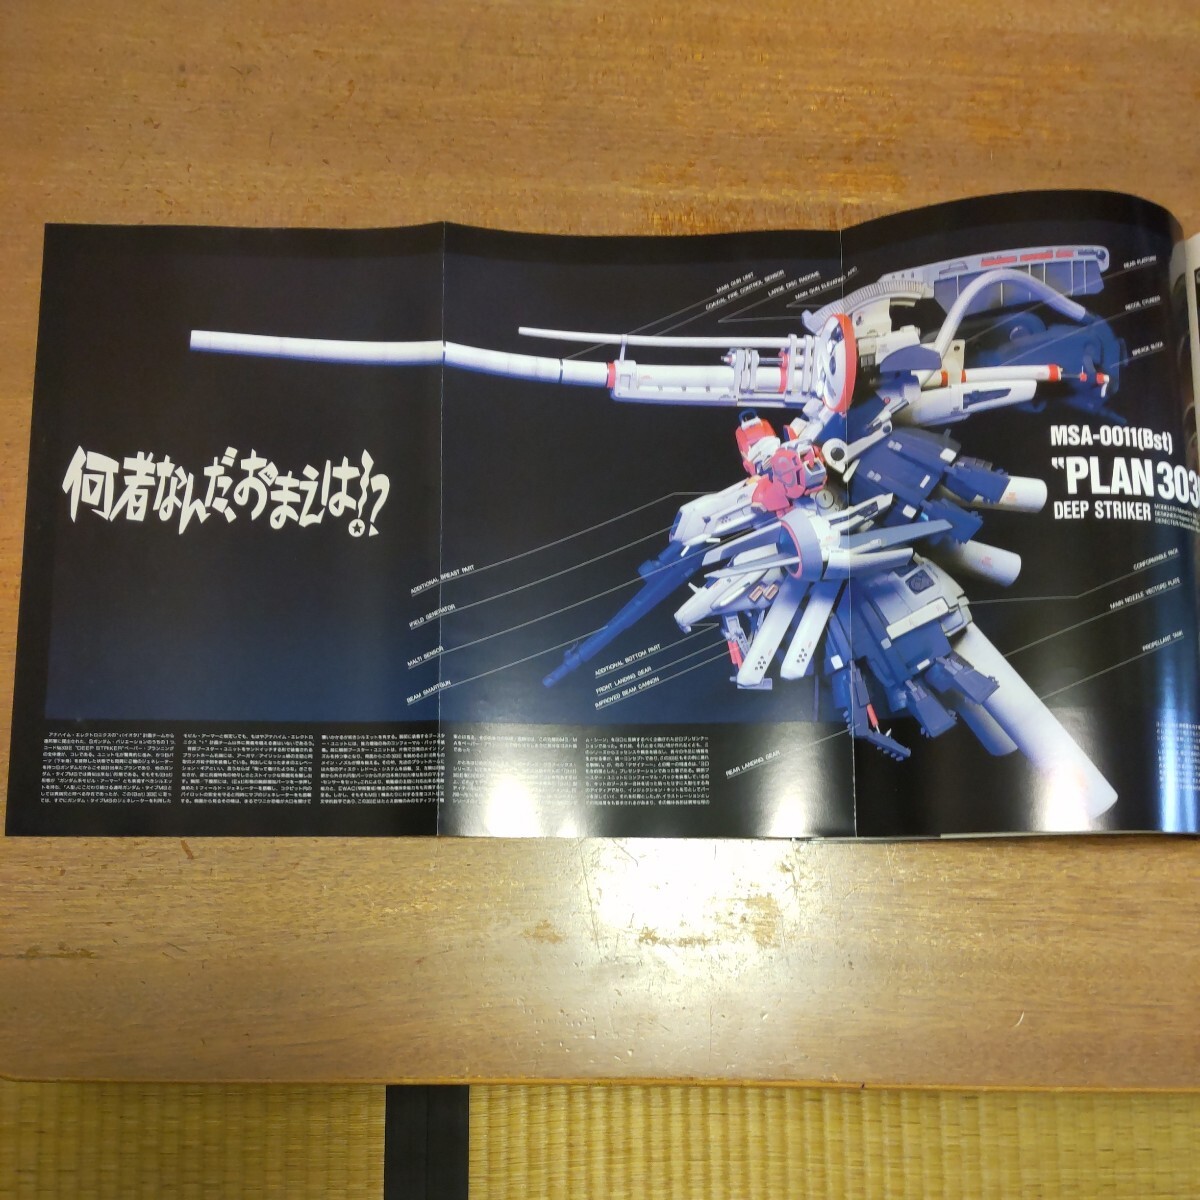  Gundam * см фланель модель графика Special Edition большой Япония картина 2000 год 5 месяц no. 9. obi есть 